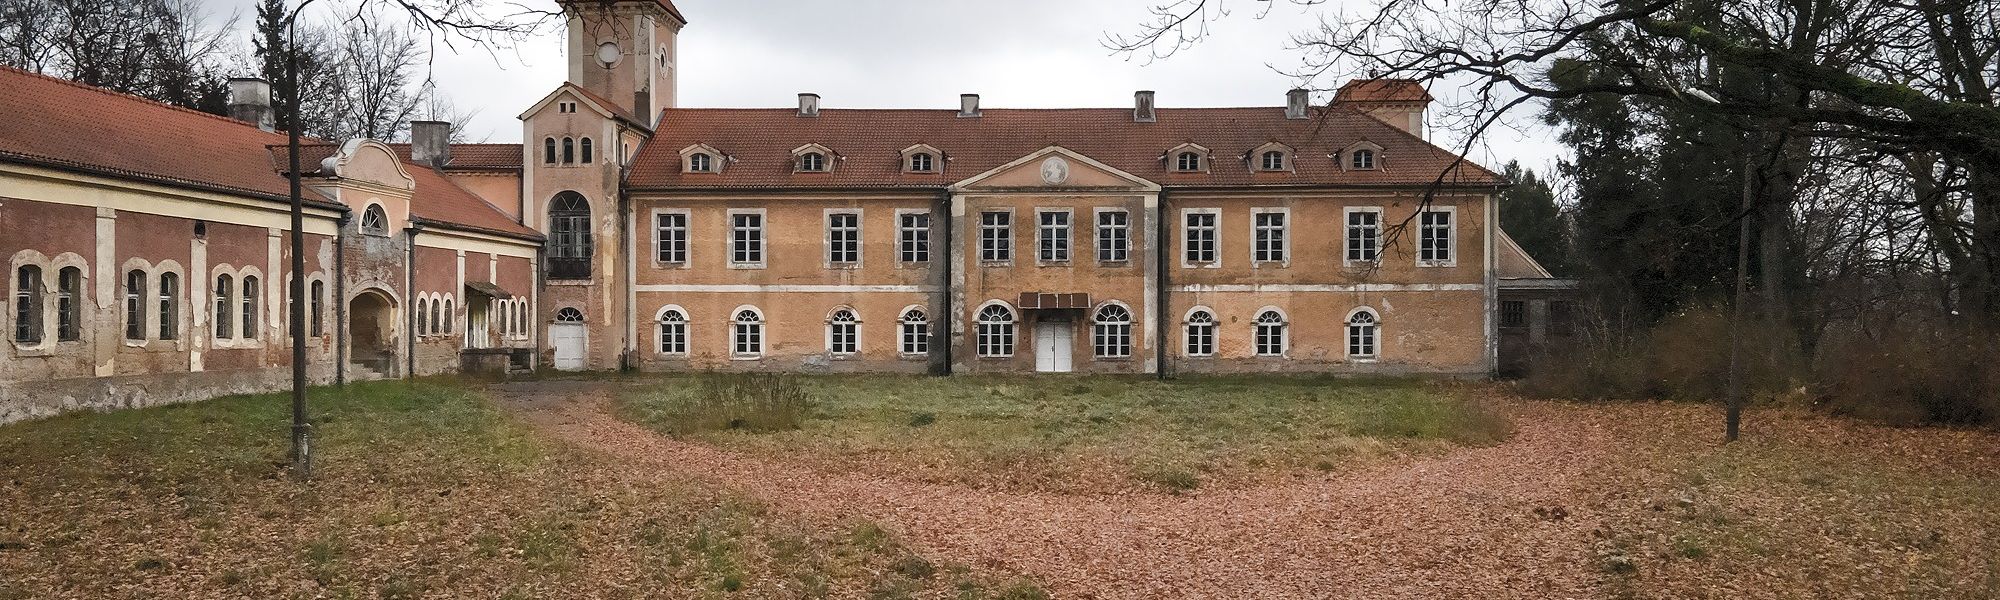 Bilder Palace in Dobrocin, Warmia-Masuria